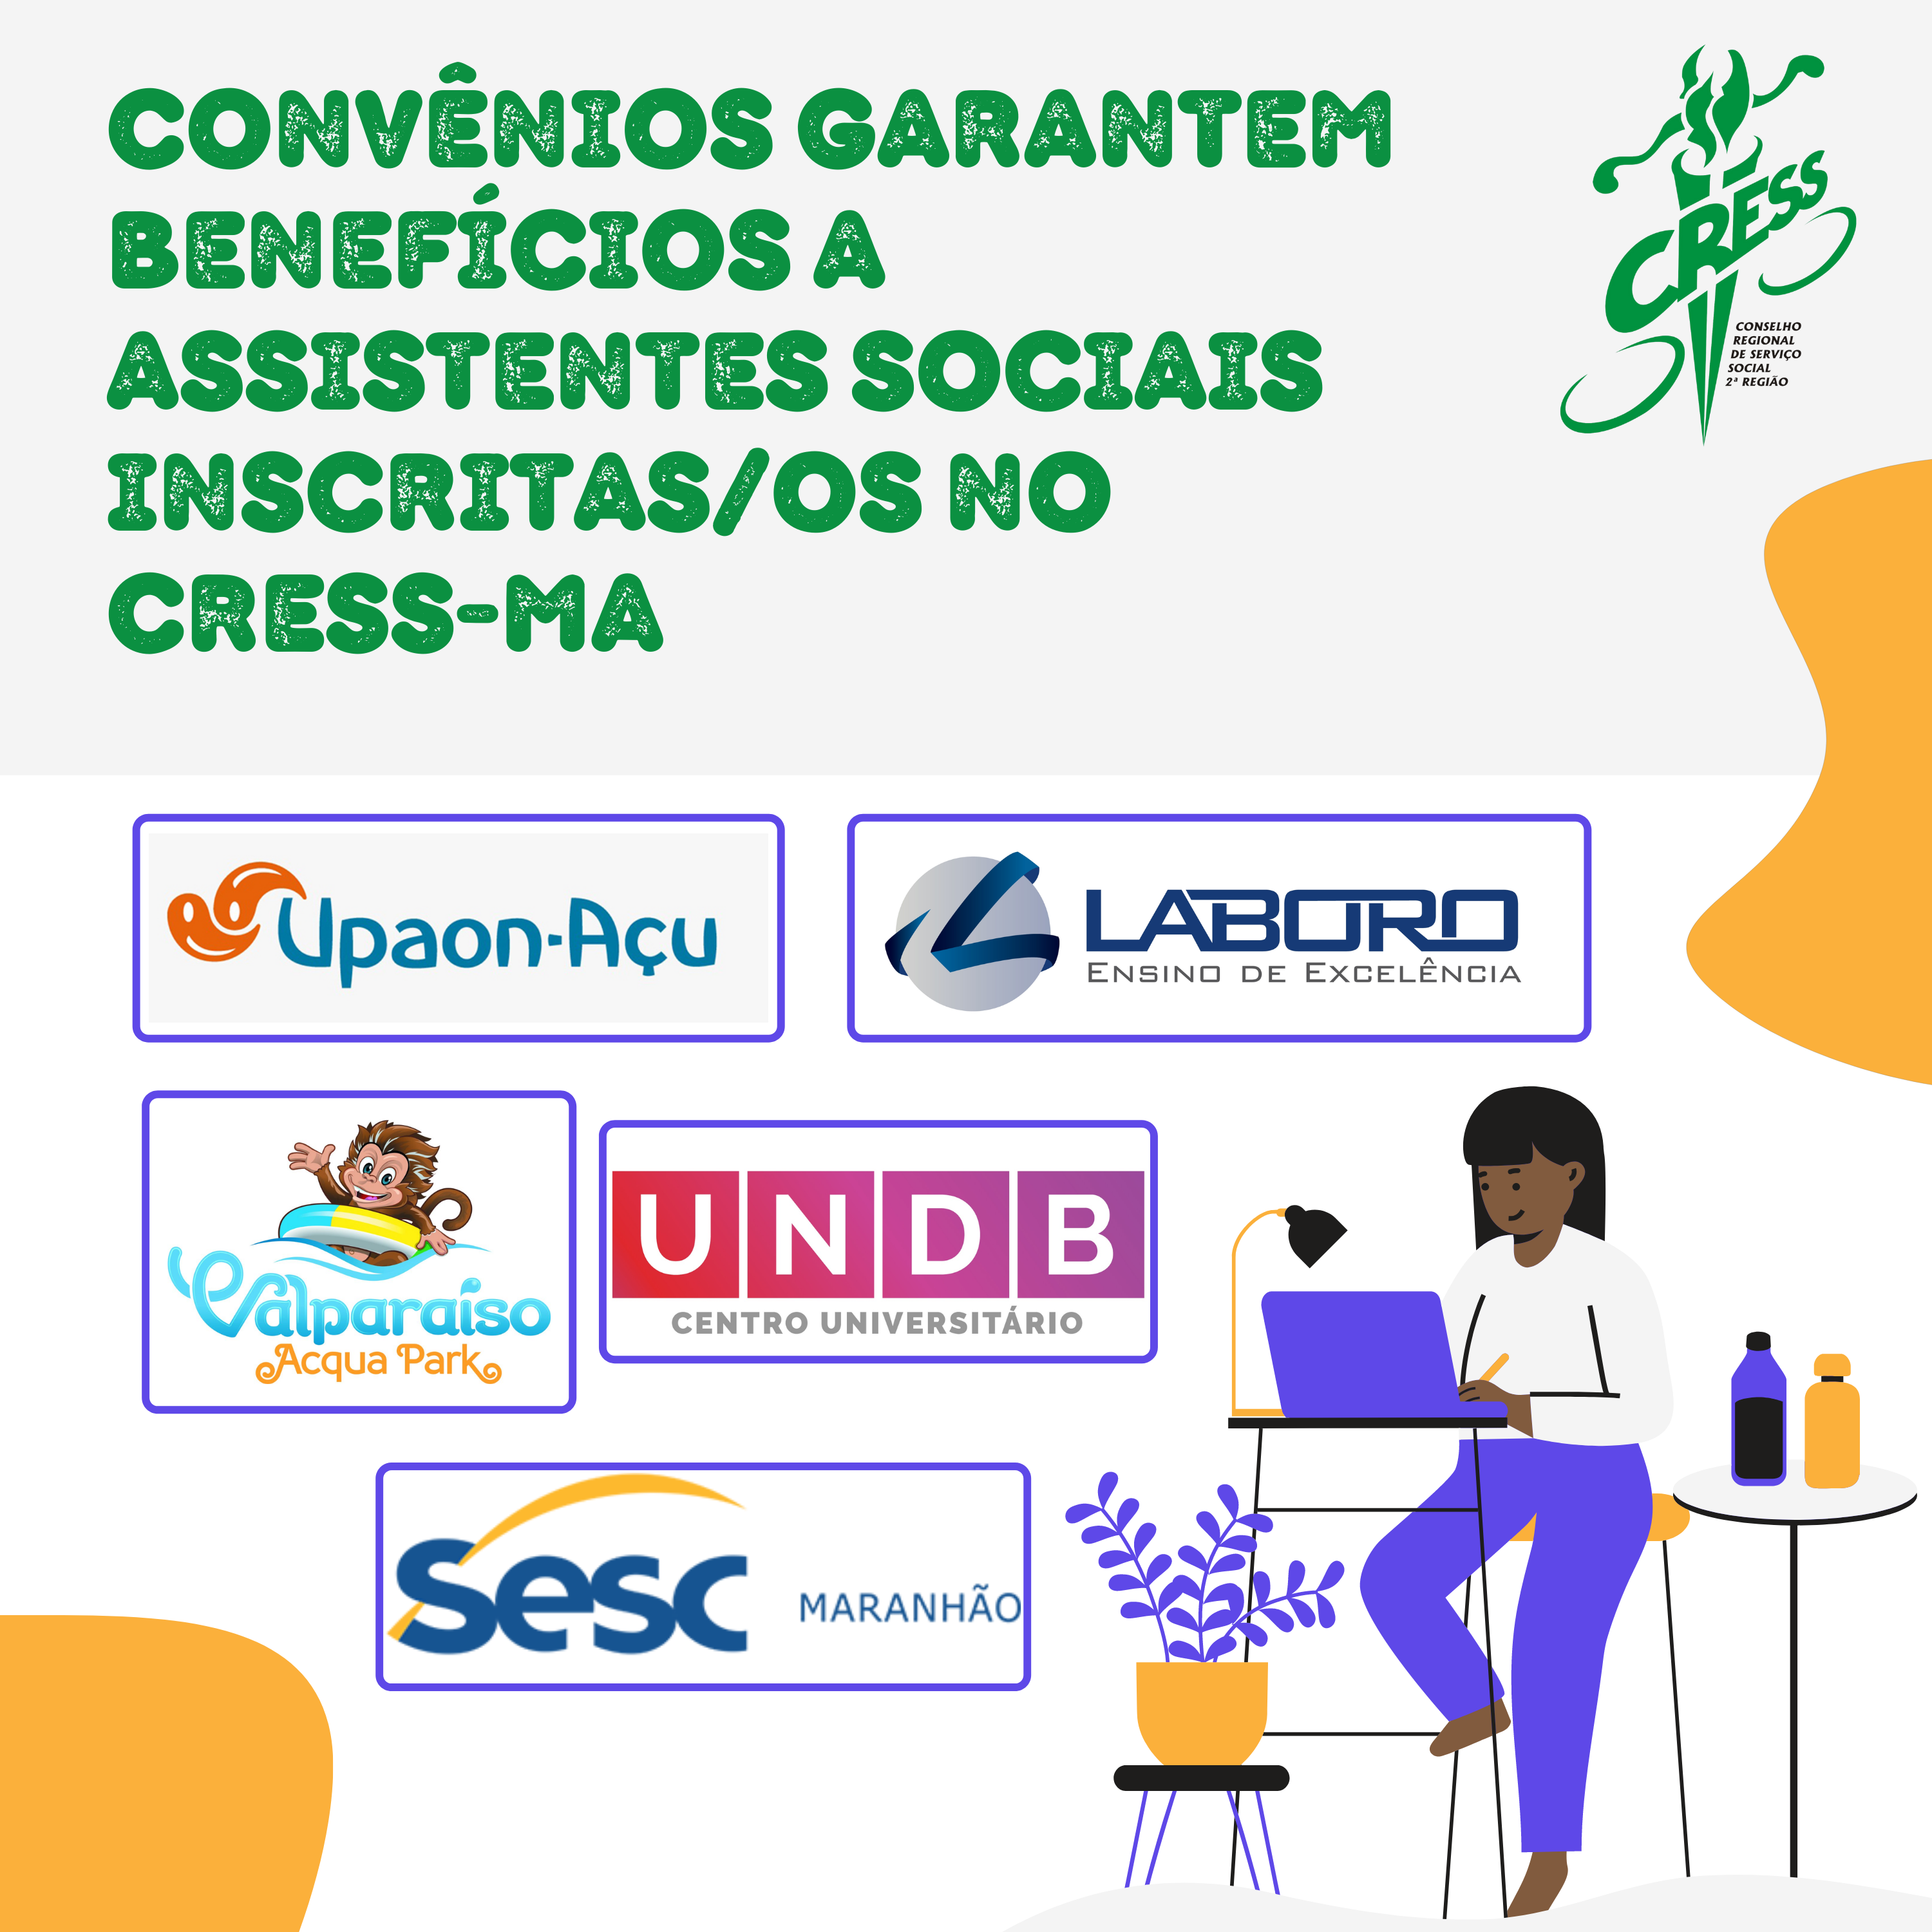 Convênios garantem benefícios a assistentes sociais inscritasos no CRESS-MA (3)